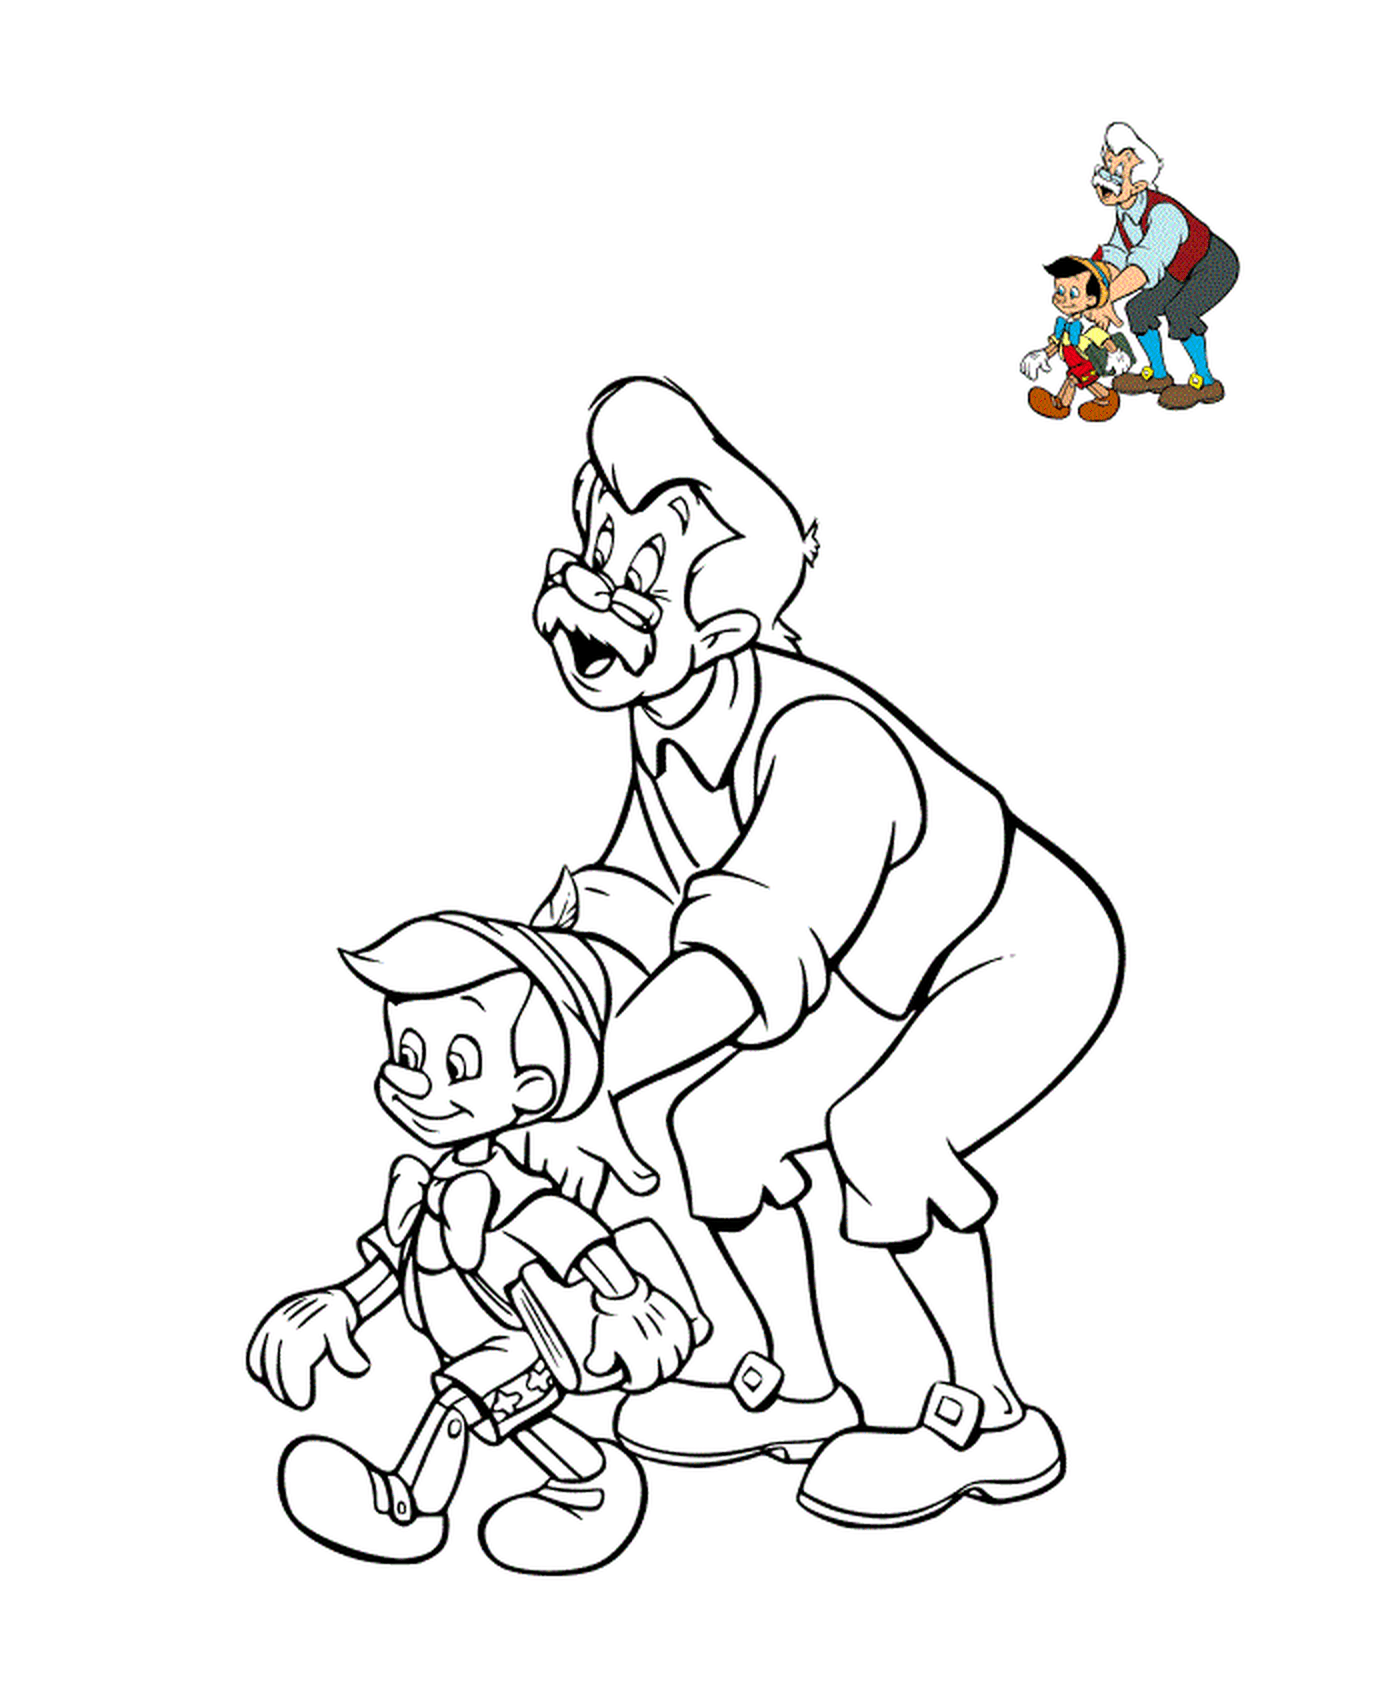  Geppetto mit seinem Kind, Pinocchio 